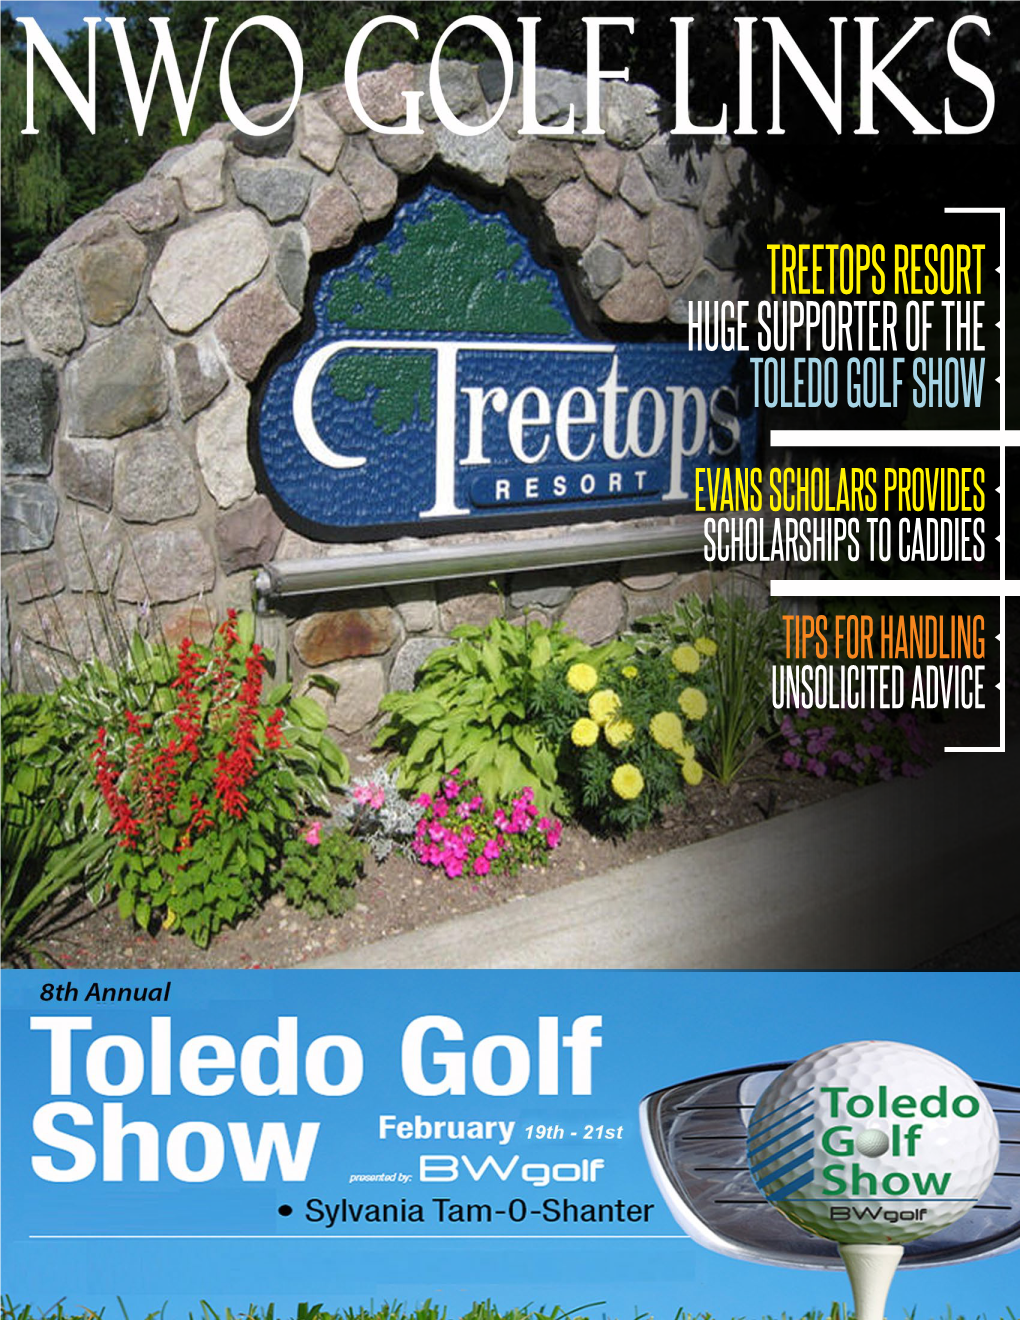 Treetops Resort Huge Supporter of the Toledo Golf Show